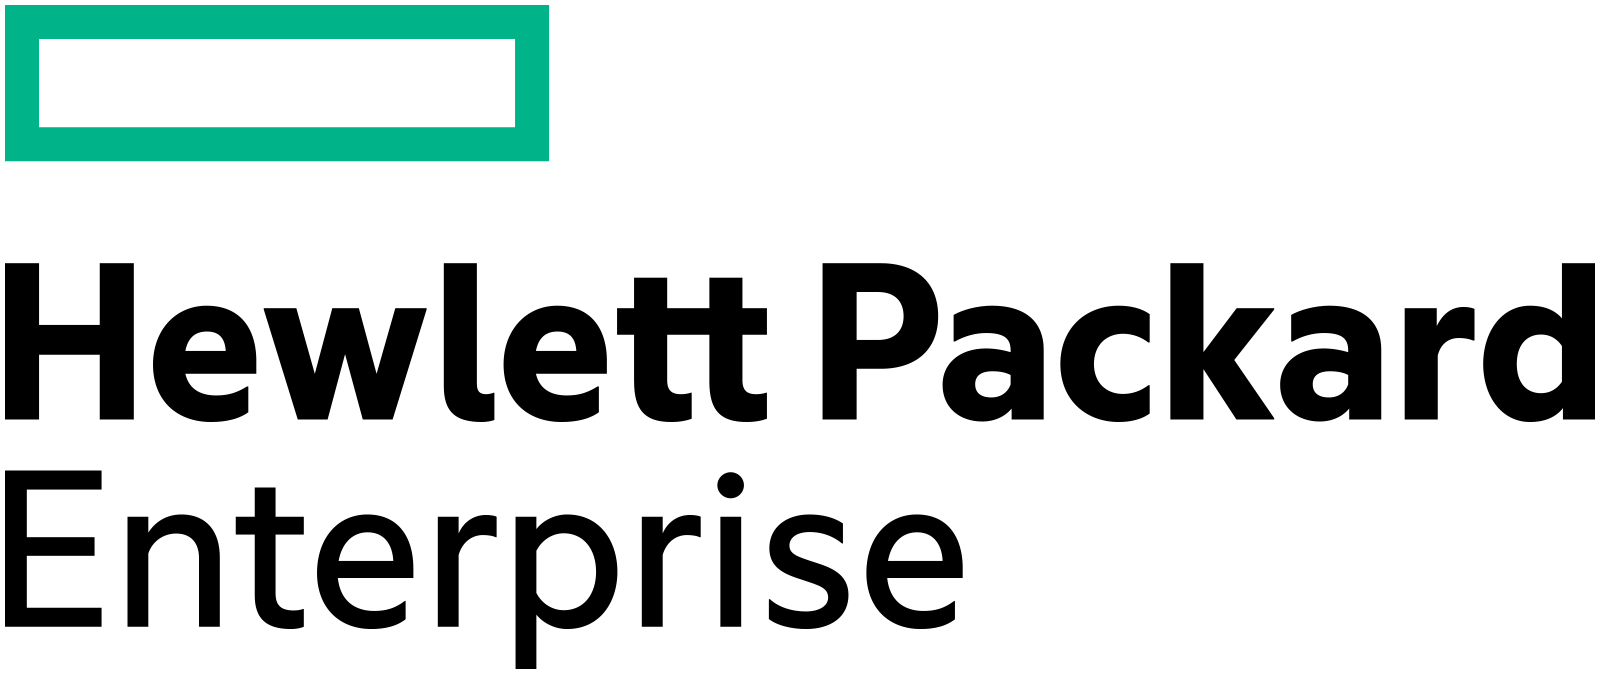 Hewlett Packard Enterprise's logo